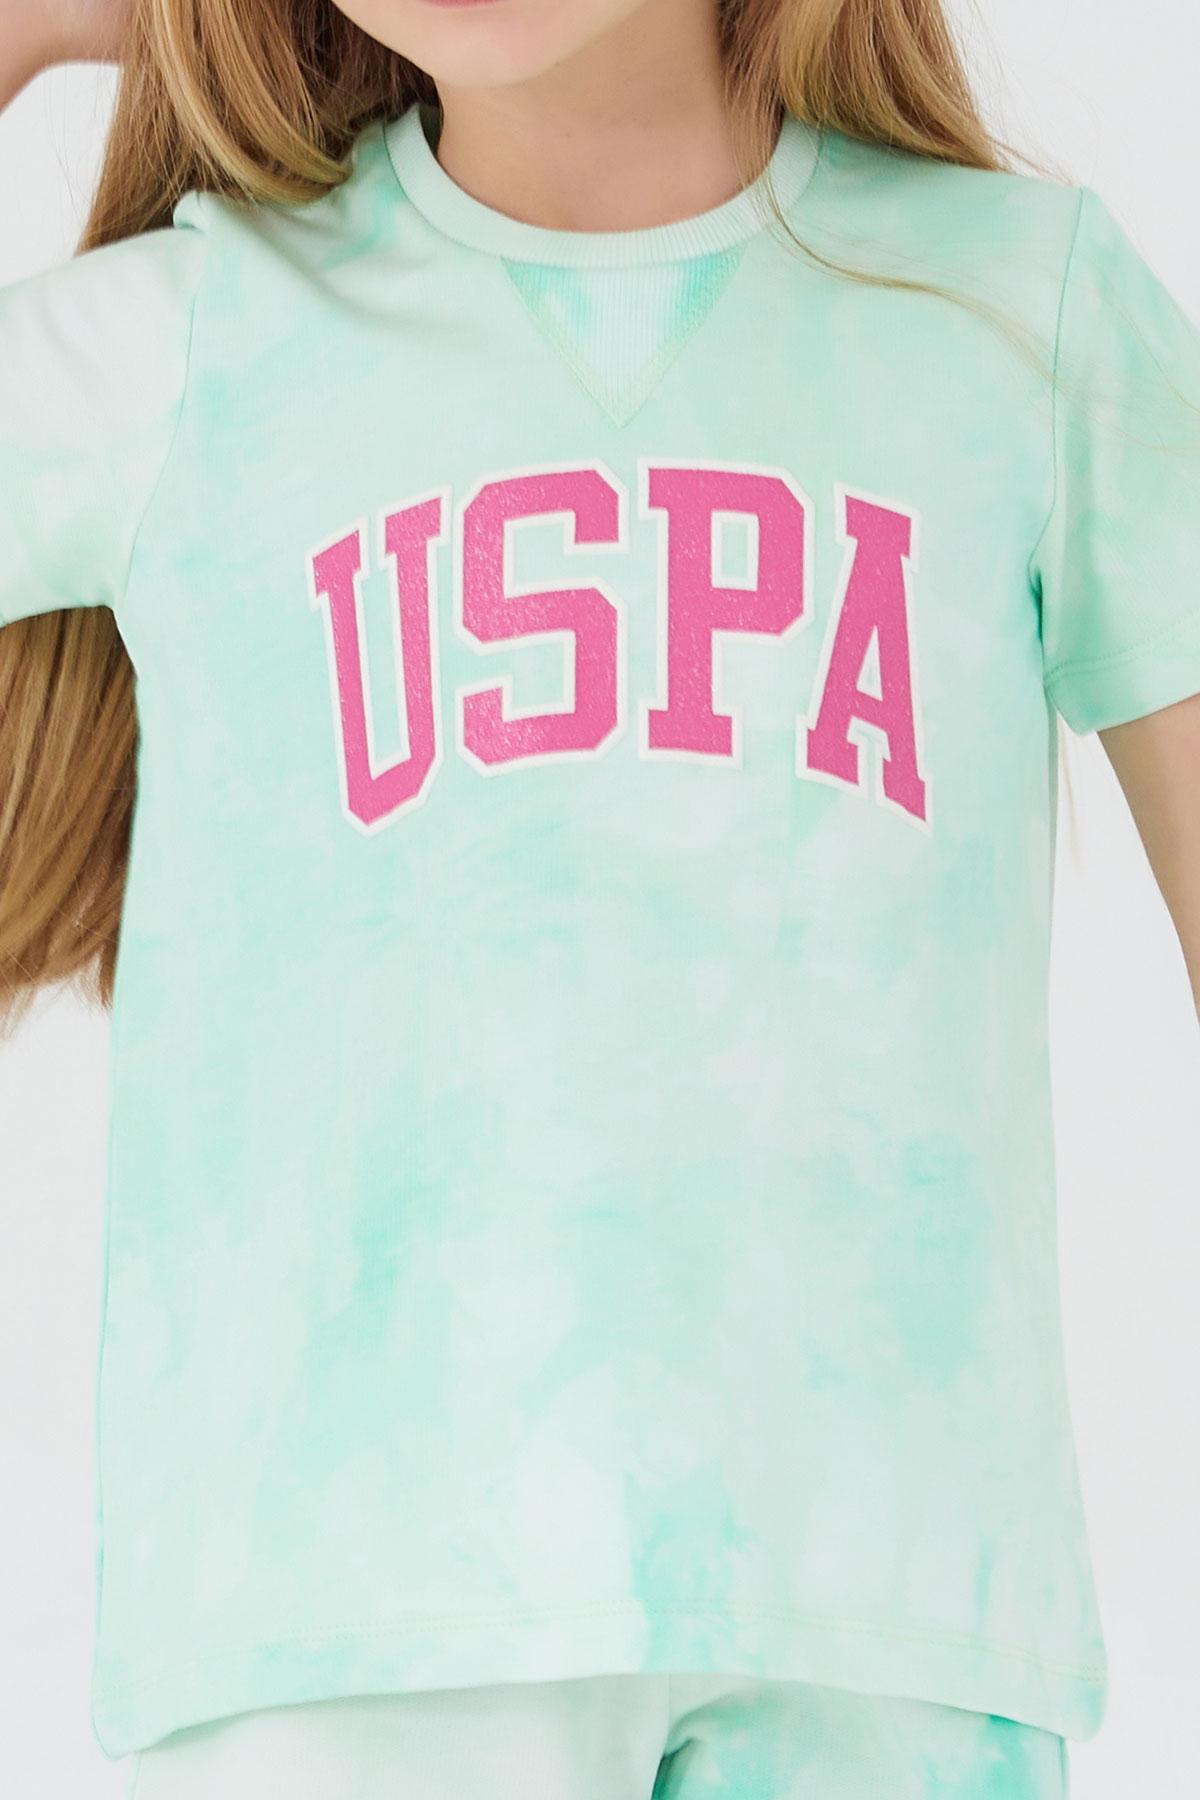 Selected image for U.S. POLO ASSN. Komplet šorc i majica za devojčice US1422-4 menta